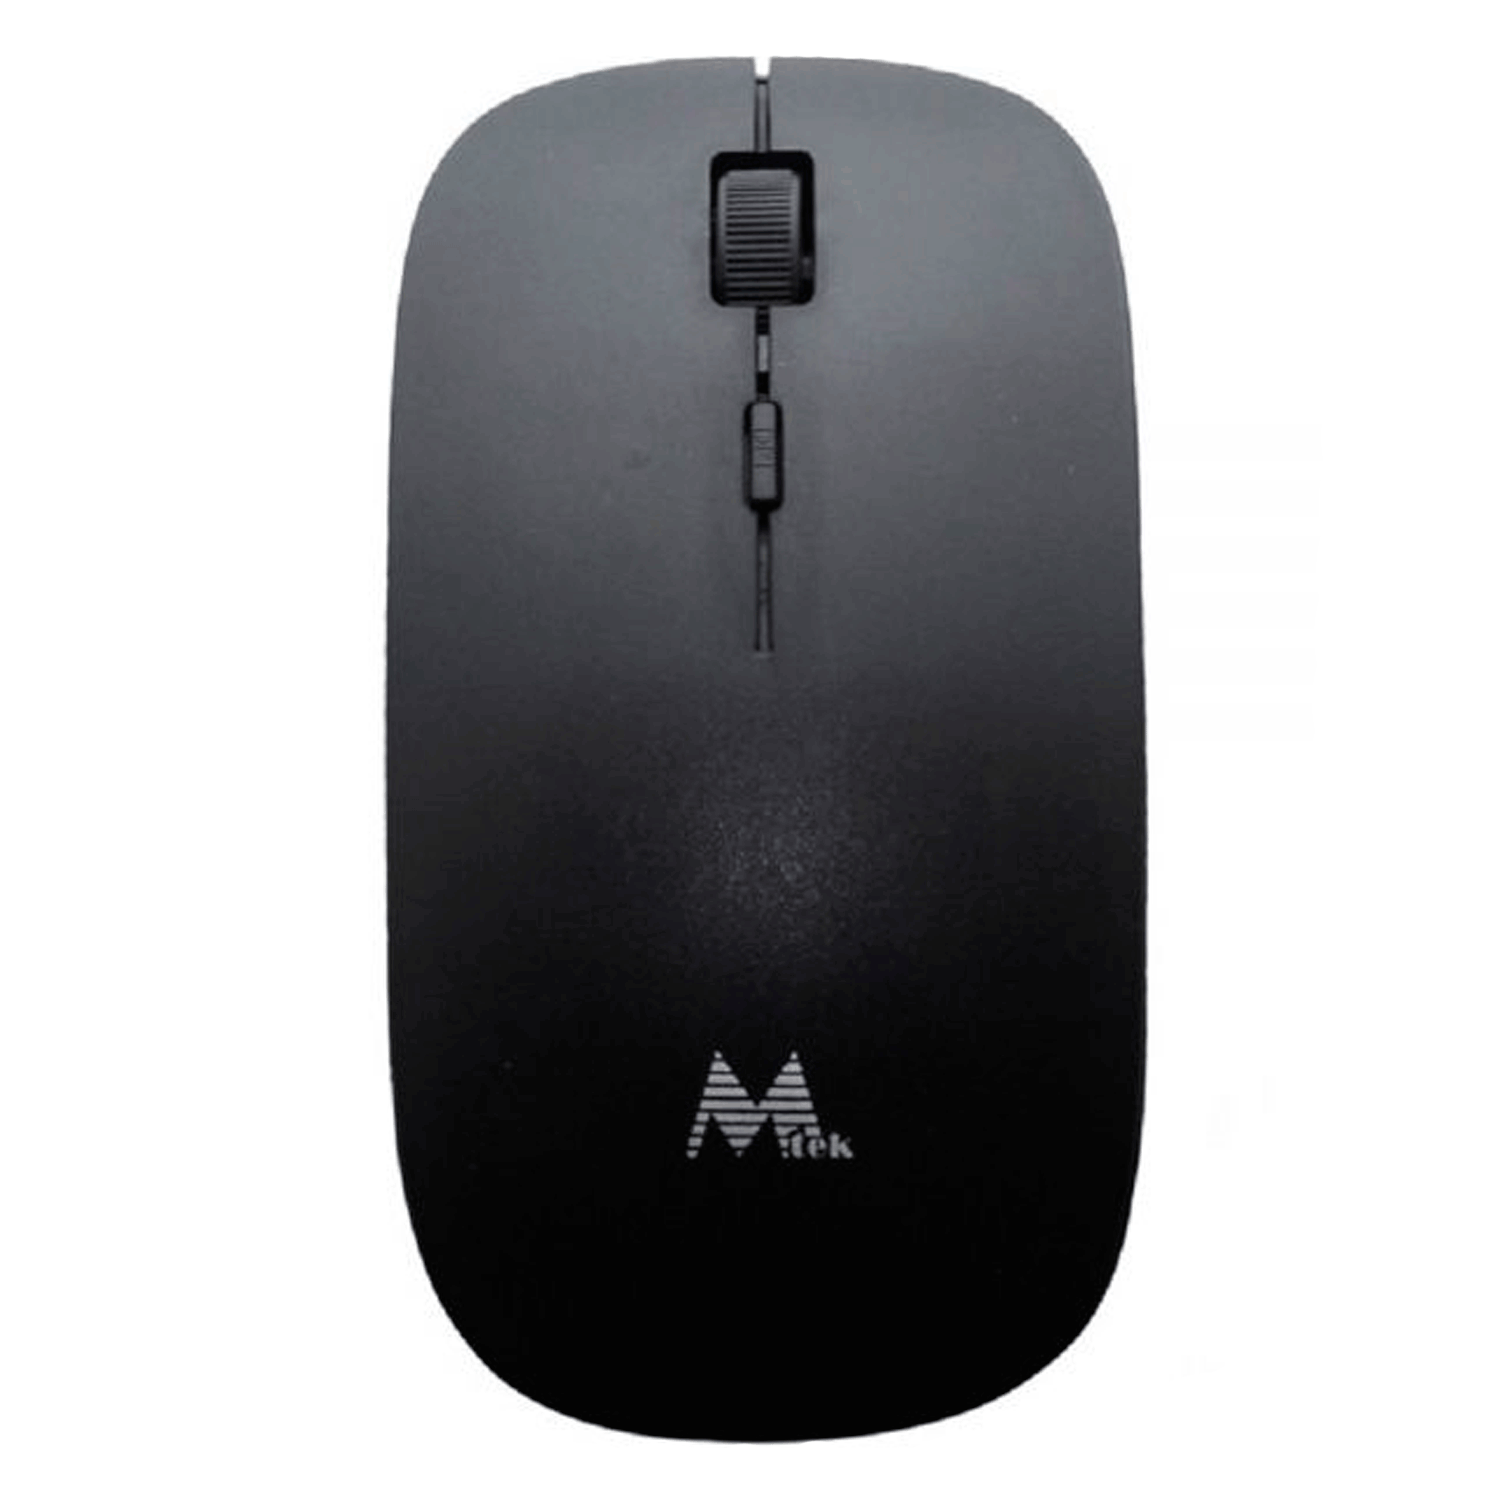 Mouse MTEK MW-4W350B / Sem Fio / Nano USB - Preto